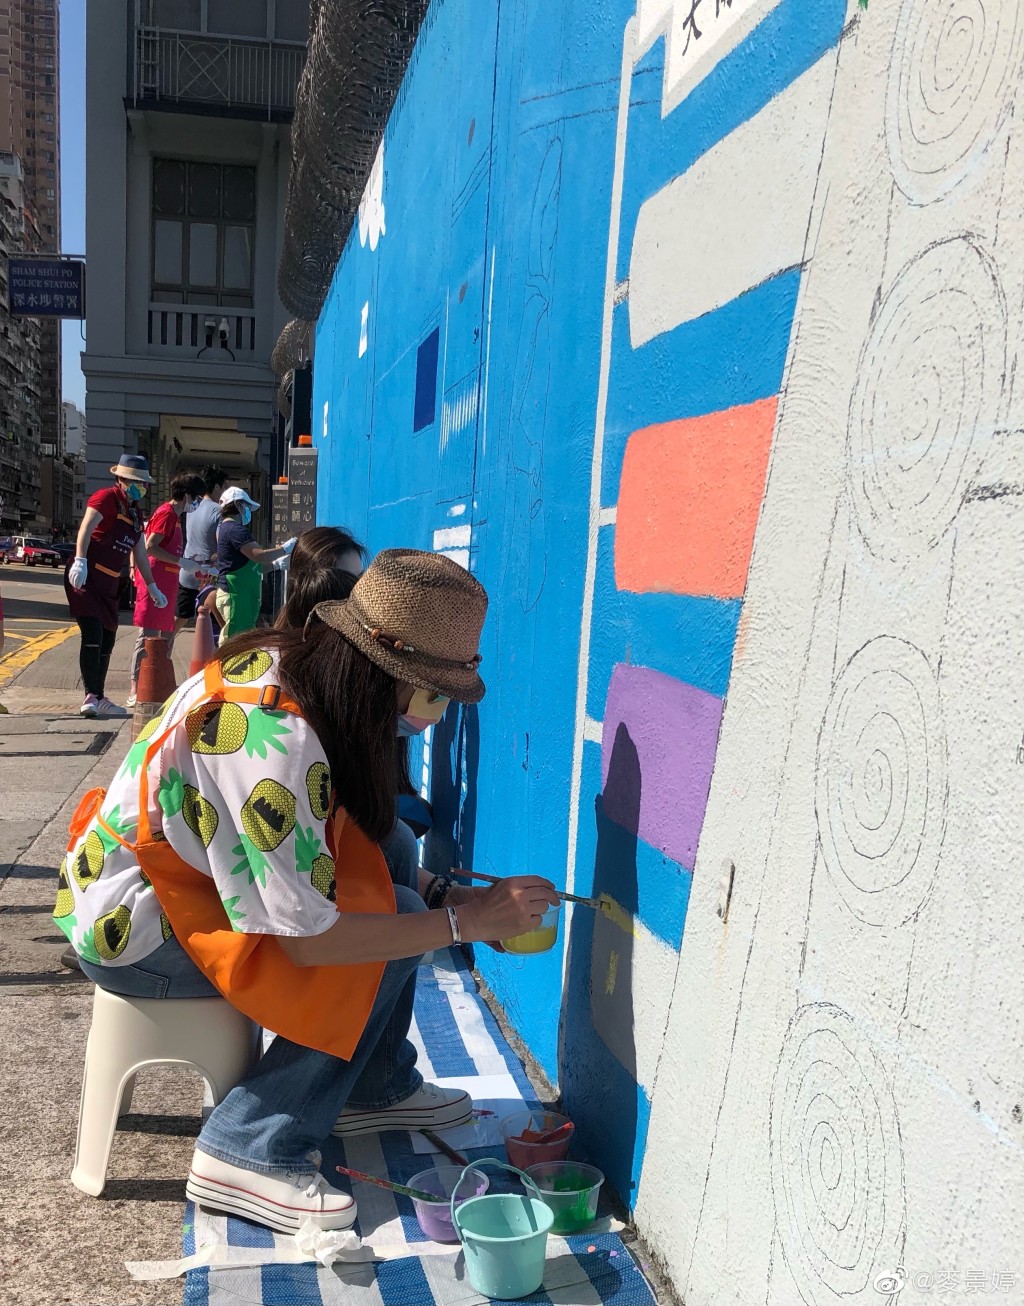 麥景婷近年經常參與街頭繪畫壁畫。